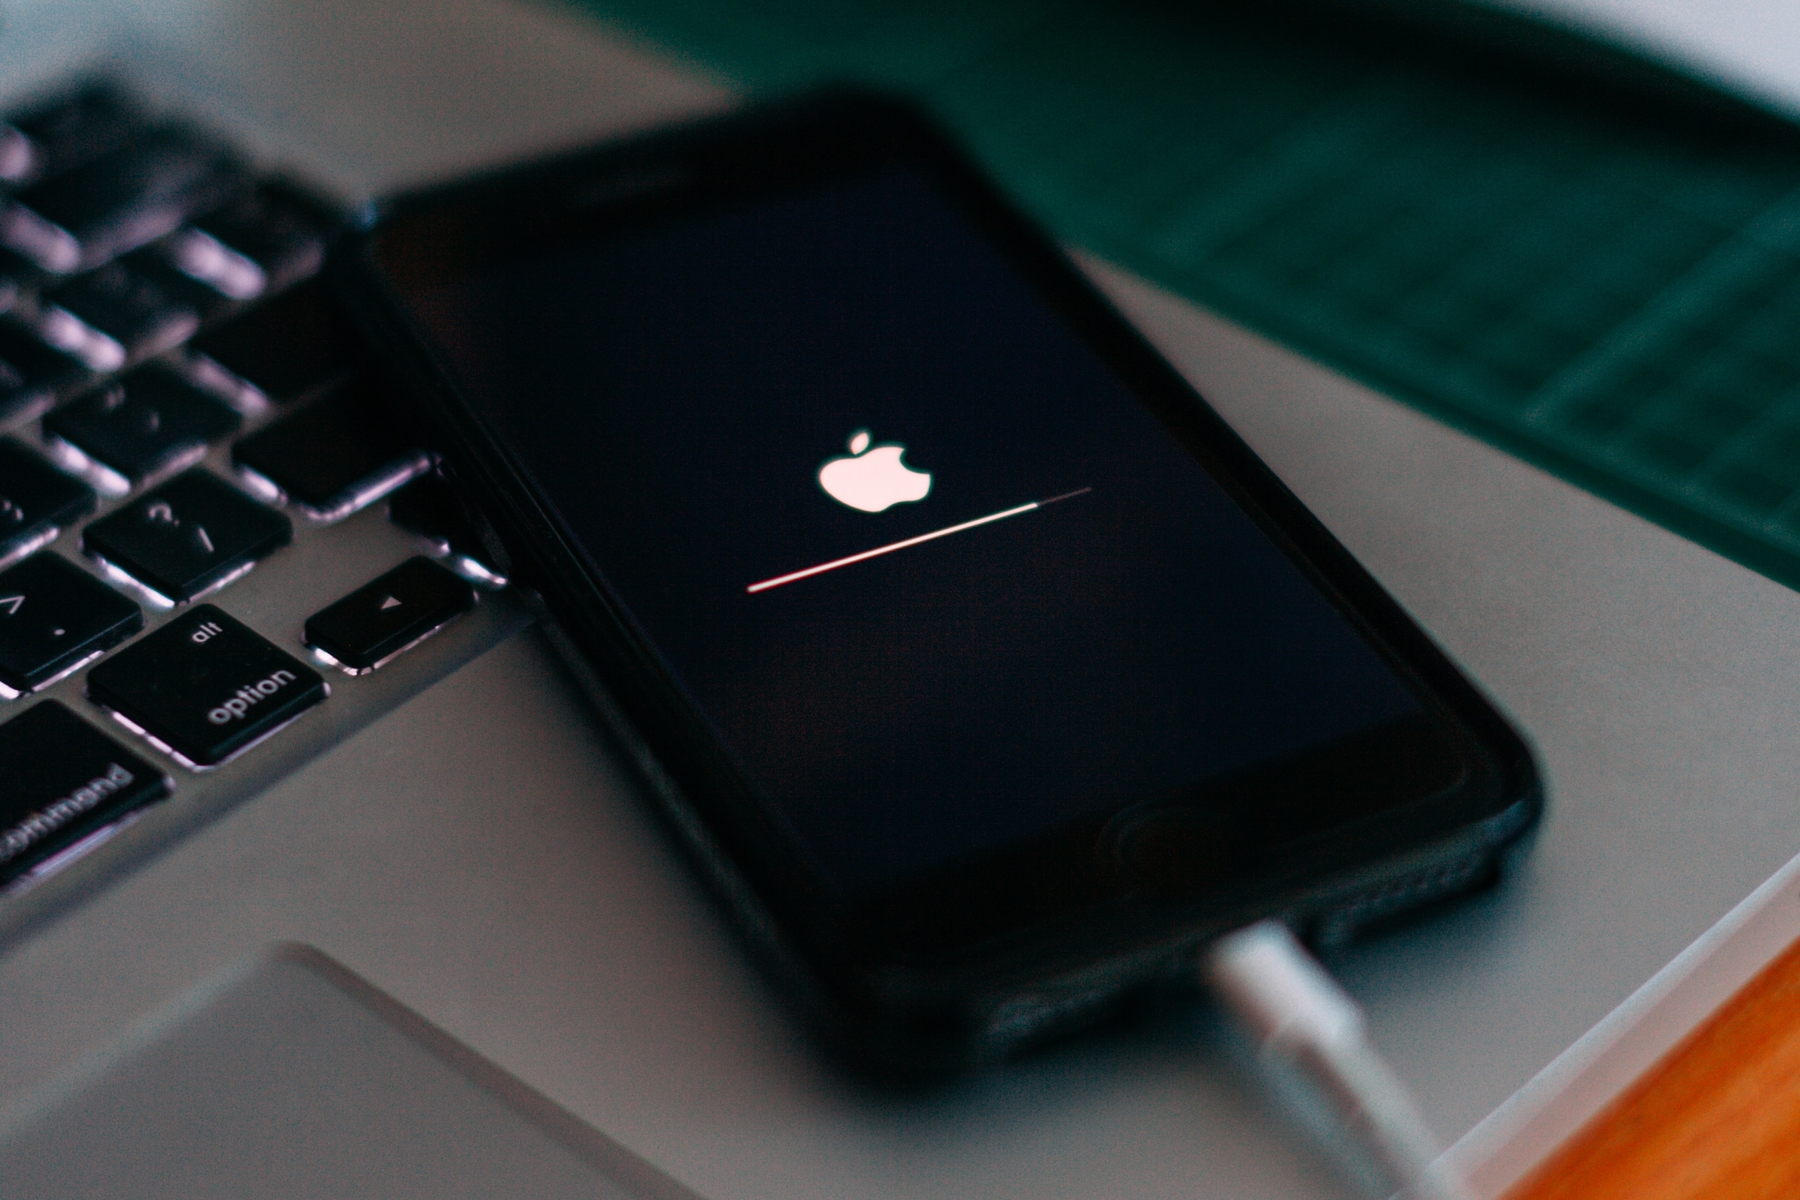 iPhone collegato sopra MacBook che mostra il logo Apple durante un recupero di aggiornamento software.